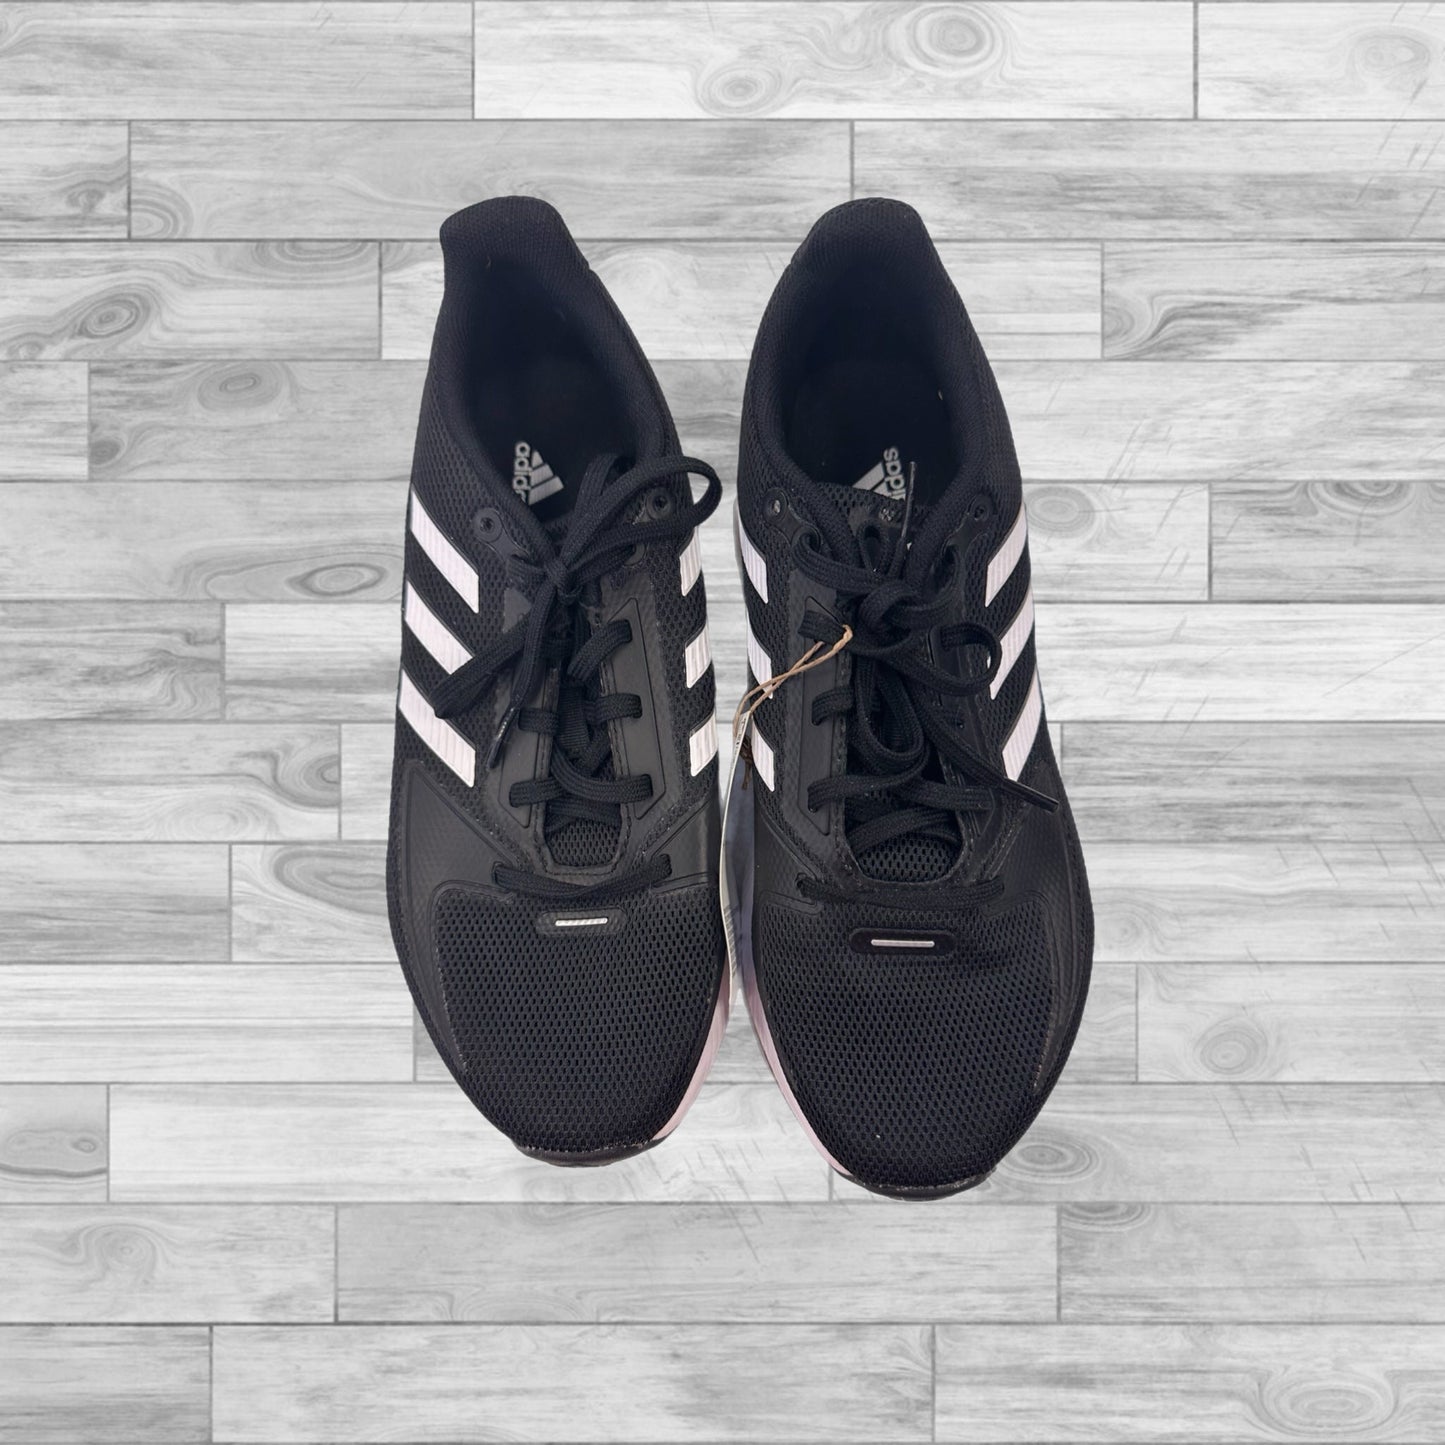 Black Shoes Athletic Adidas, Size 6.5